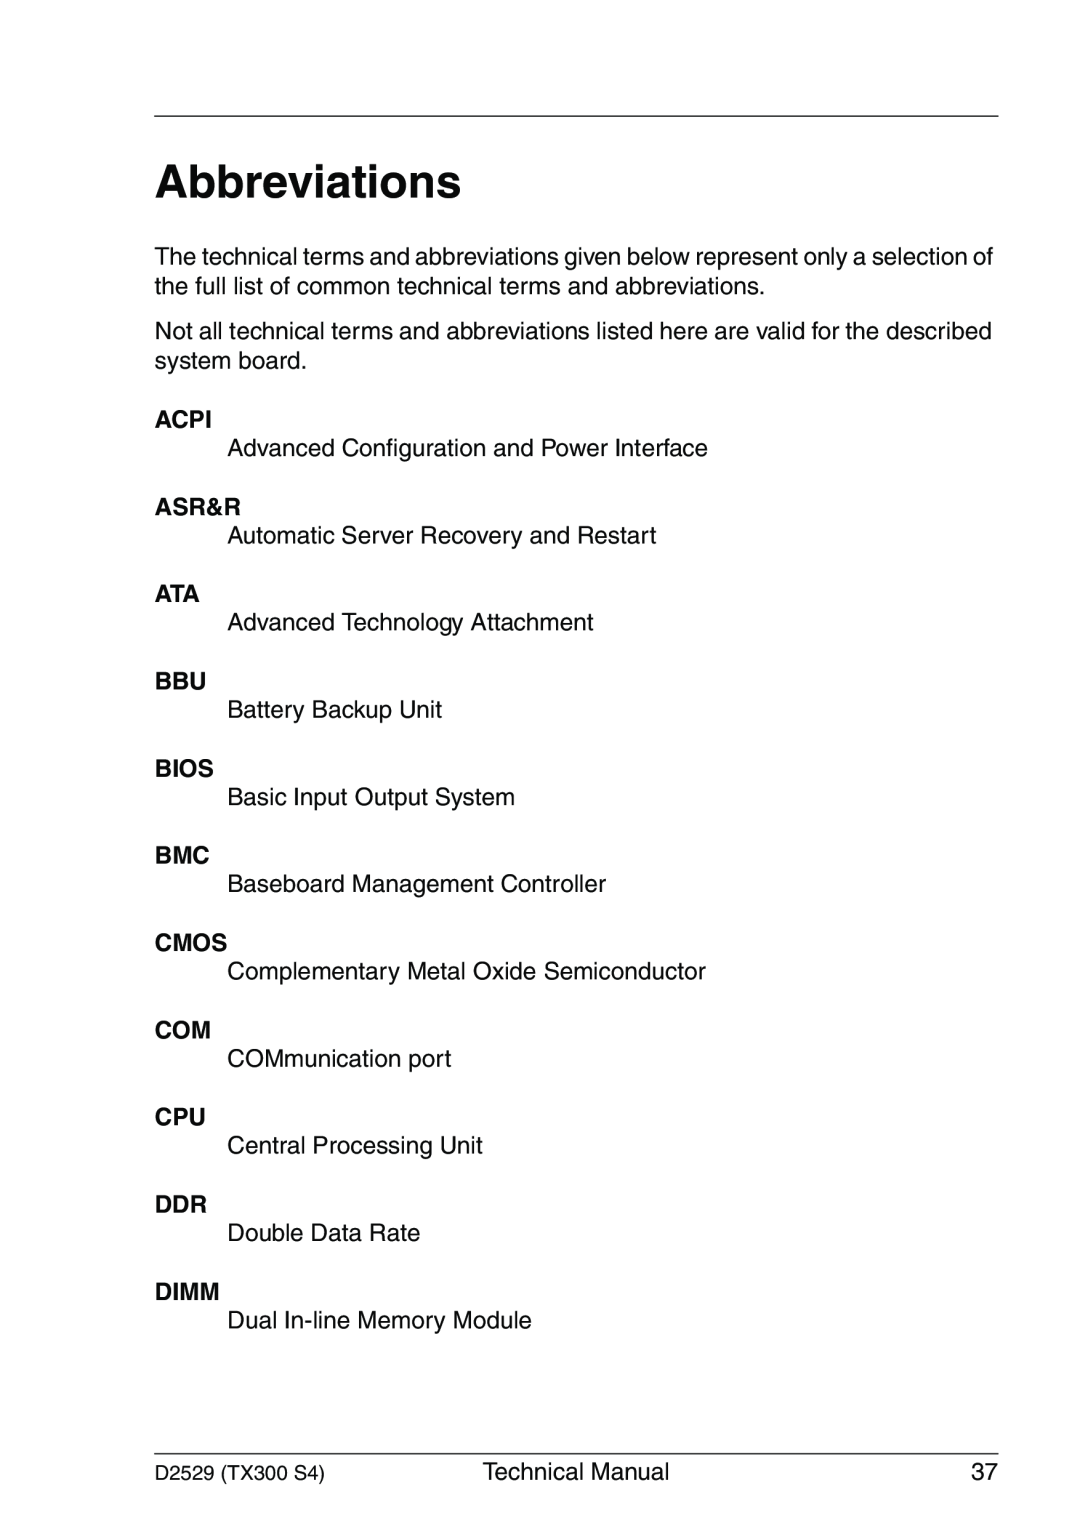 Fujitsu D2529 technical manual Abbreviations, Acpi, Asr&R, Bios, Cmos, Dimm 